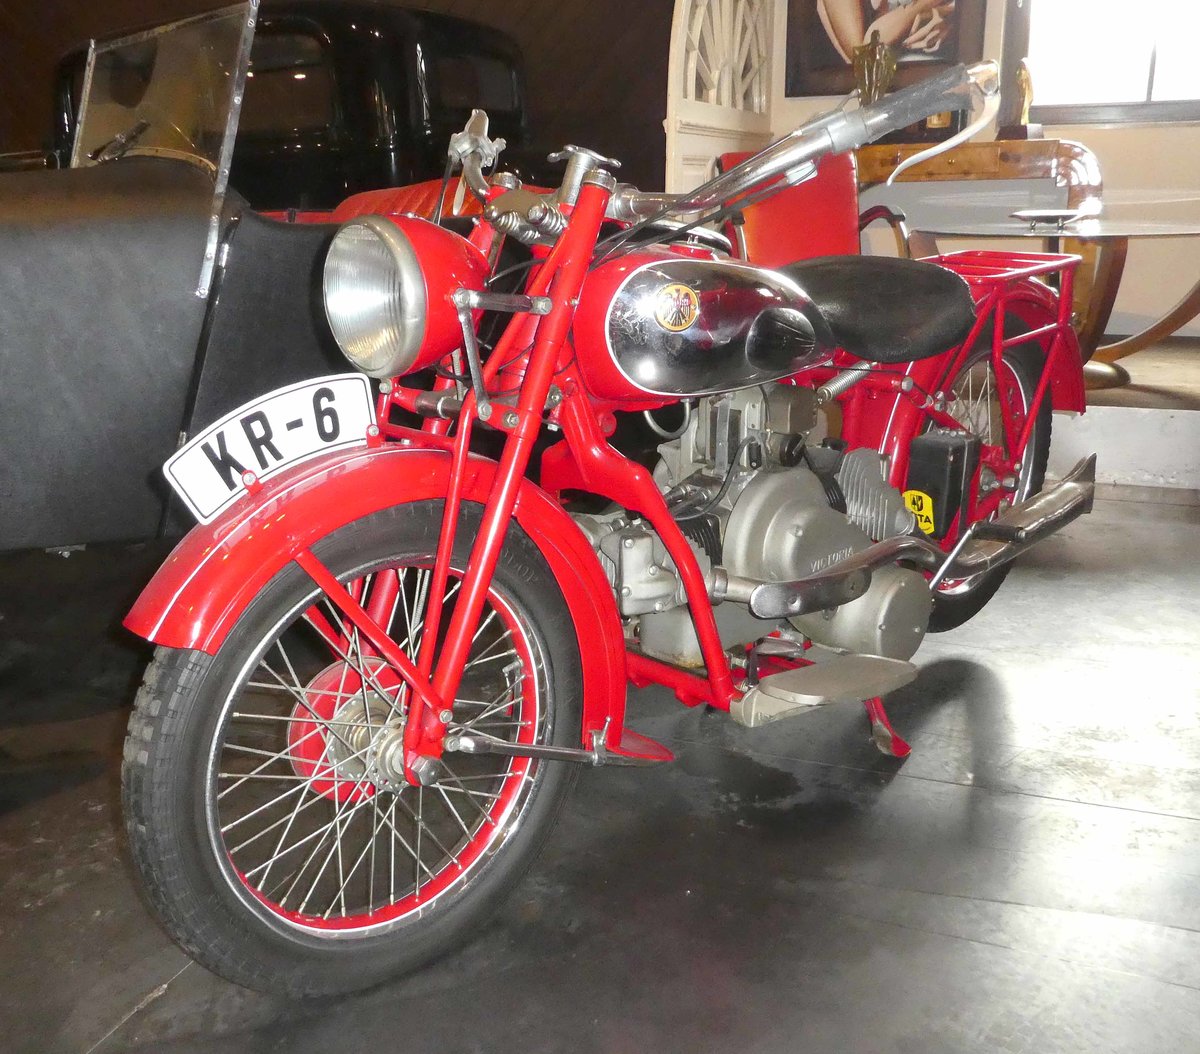 =Victoria KR 6, Bj. 1934, 600 ccm, 20 PS, ausgestellt im Auto & Traktor-Museum-Bodensee, 10-2019